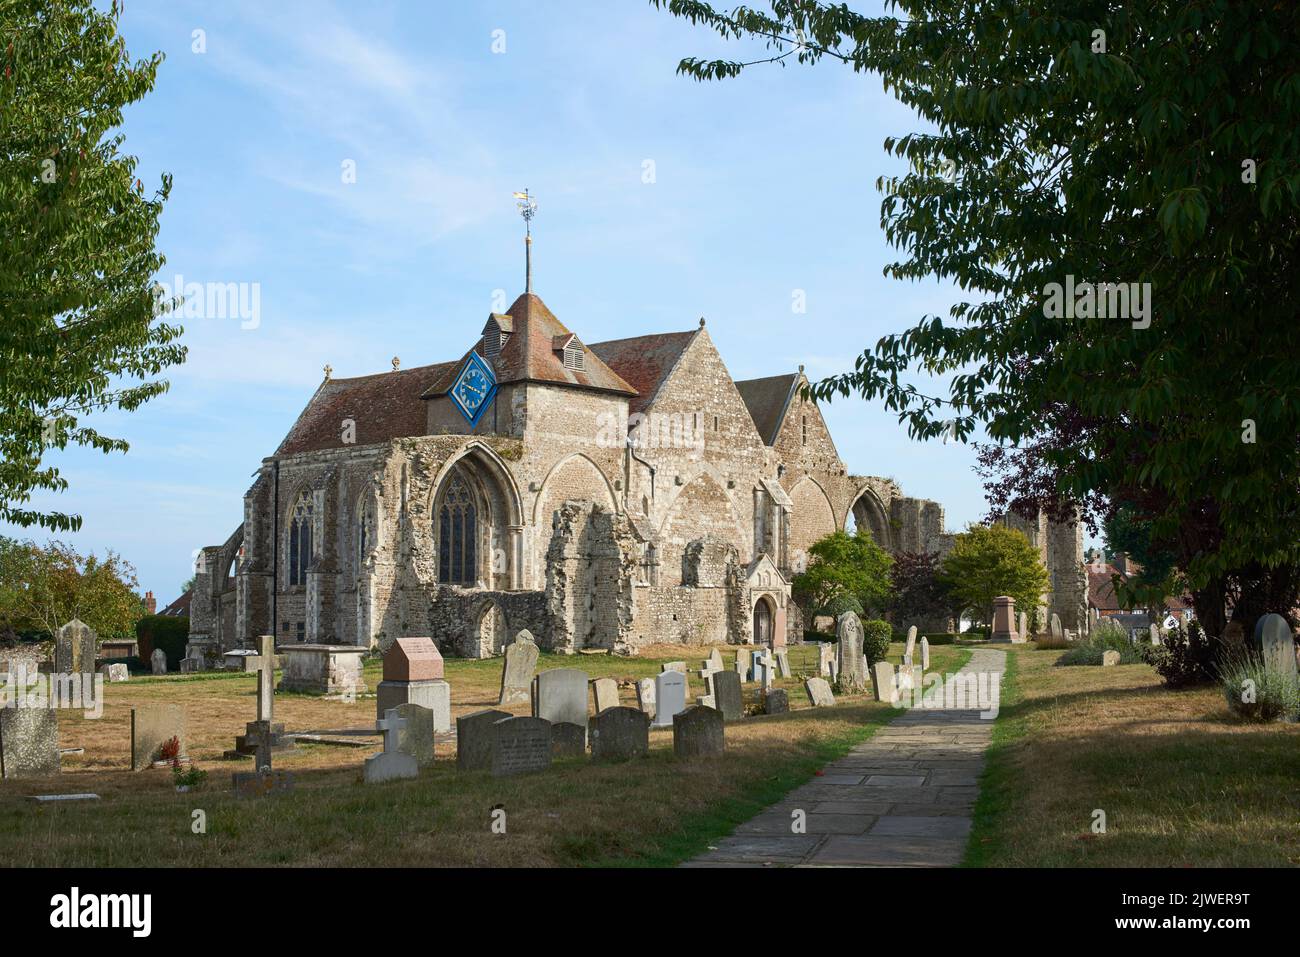 Die alte Kirche des Märtyrers St. Thomas in der historischen Stadt Winchelsea, East Sussex, Großbritannien Stockfoto